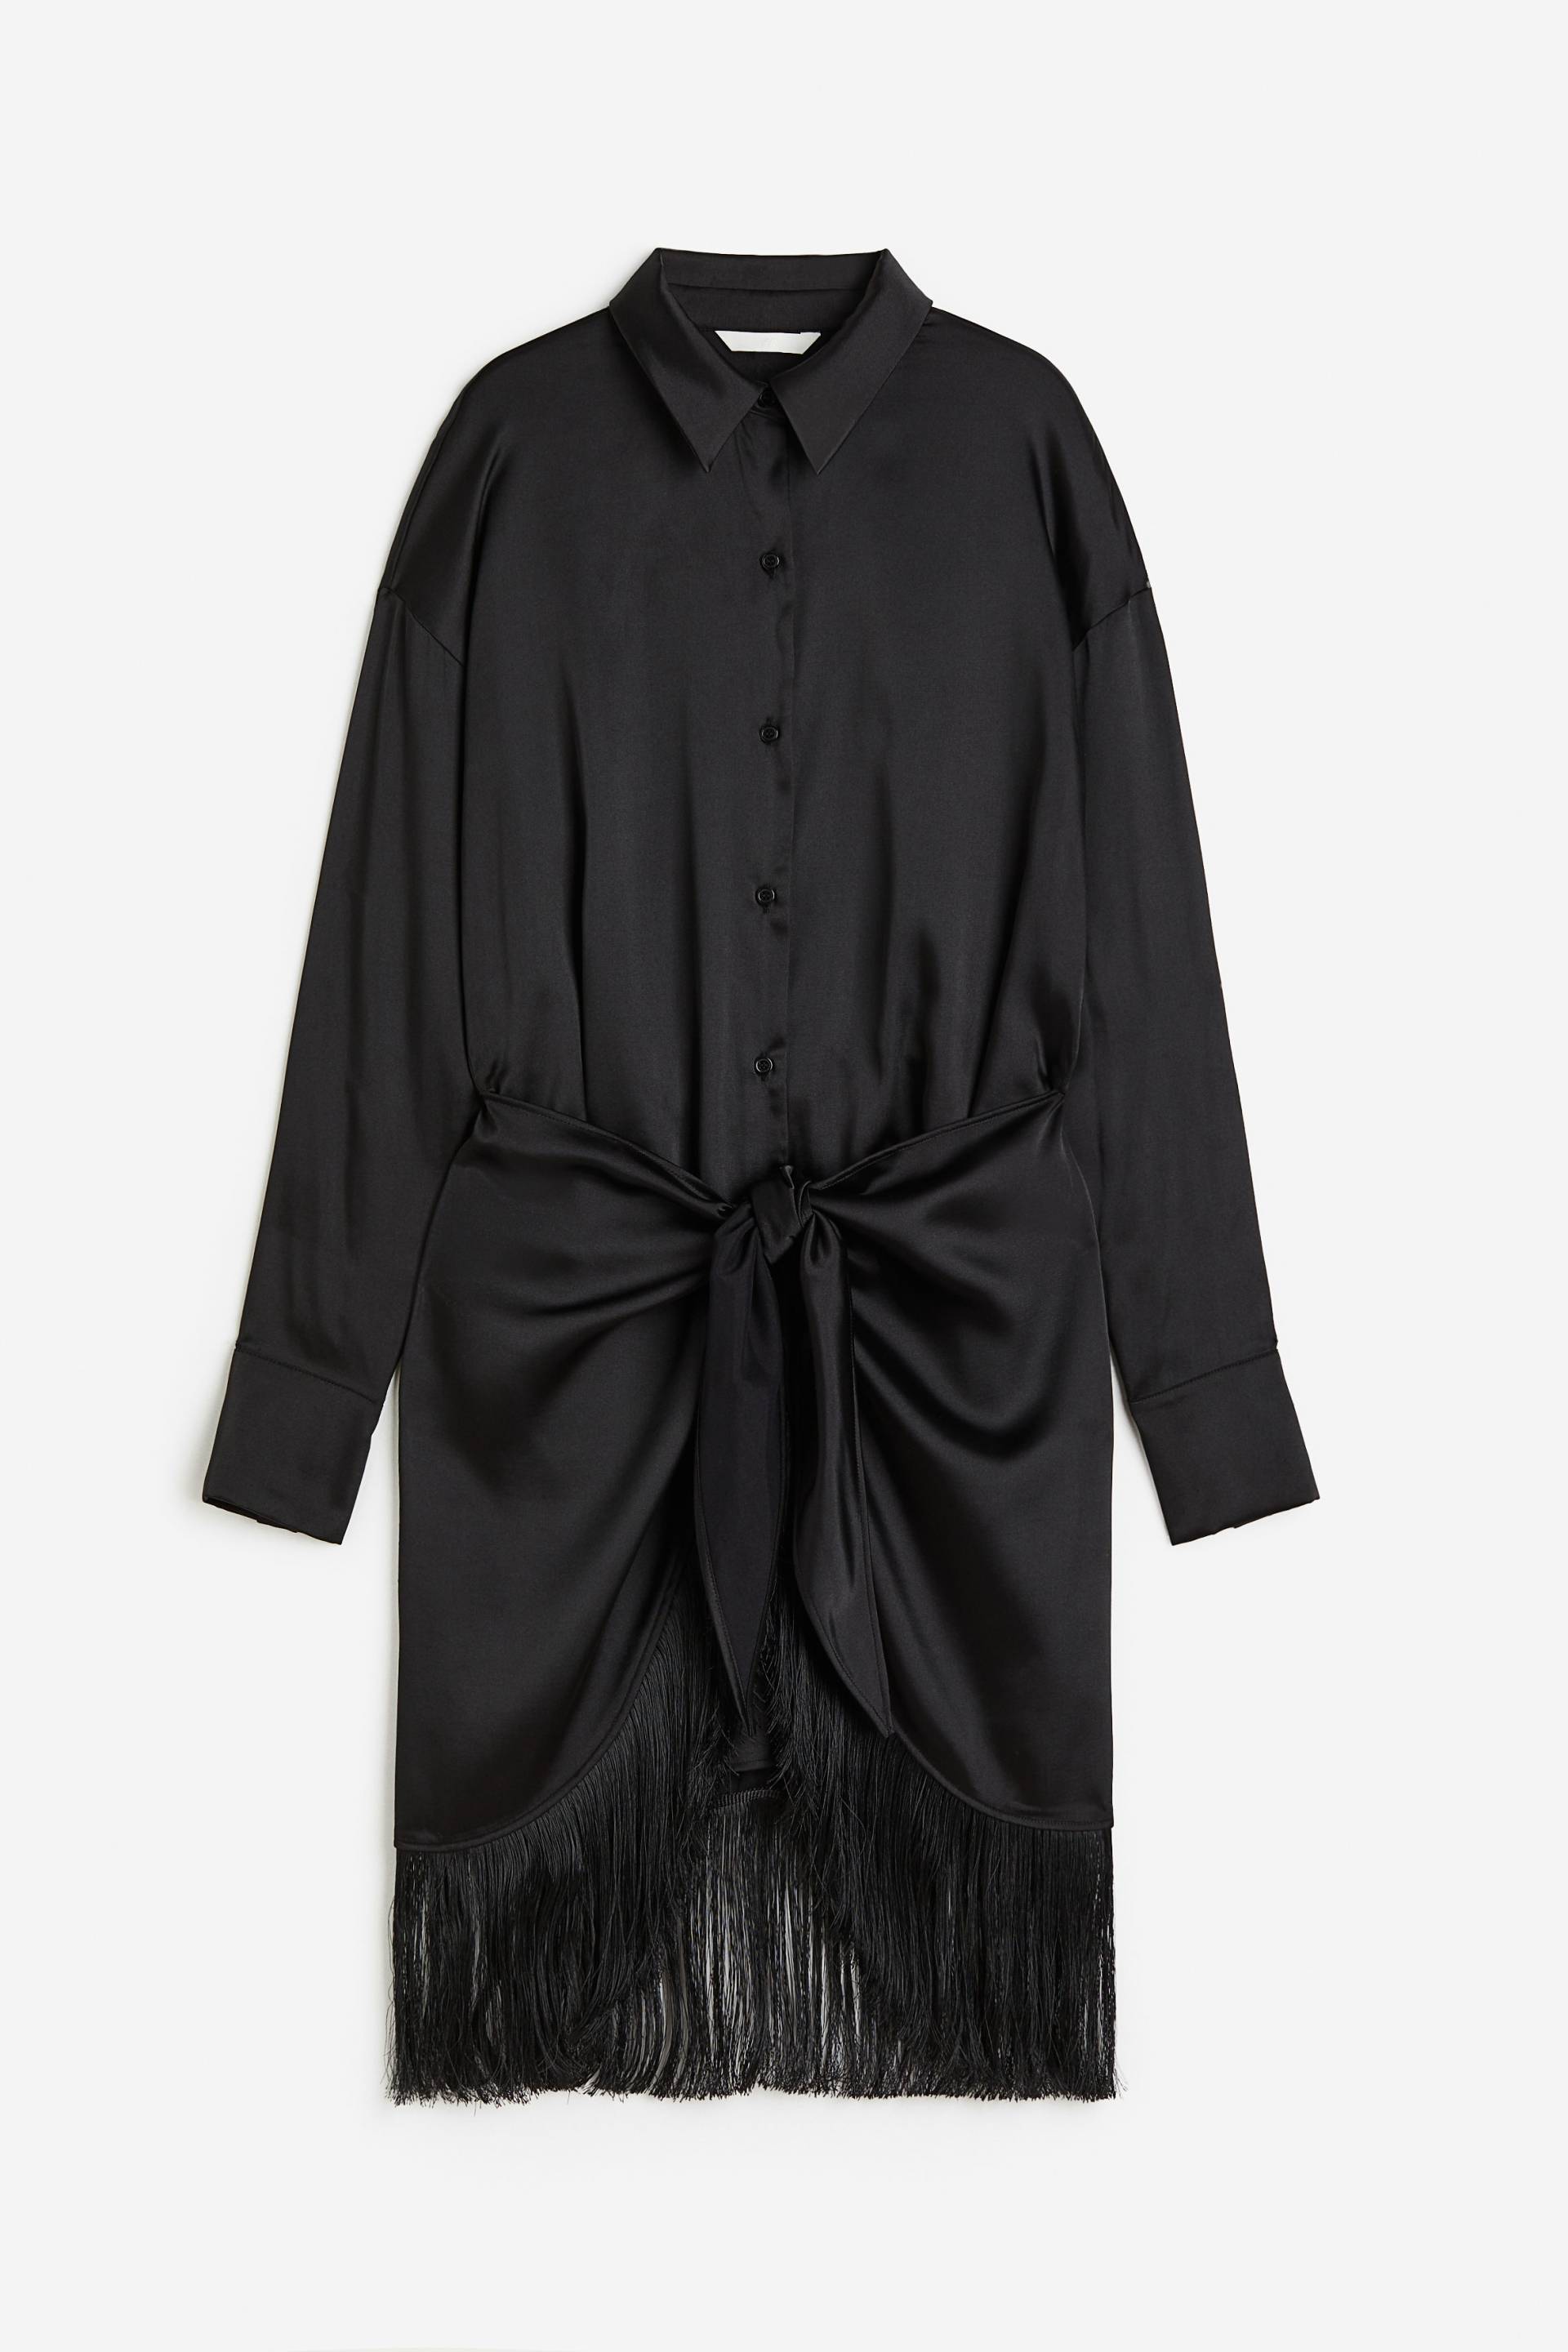 H&M Blusenkleid mit Fransenbesatz Schwarz, Party kleider in Größe M. Farbe: Black von H&M